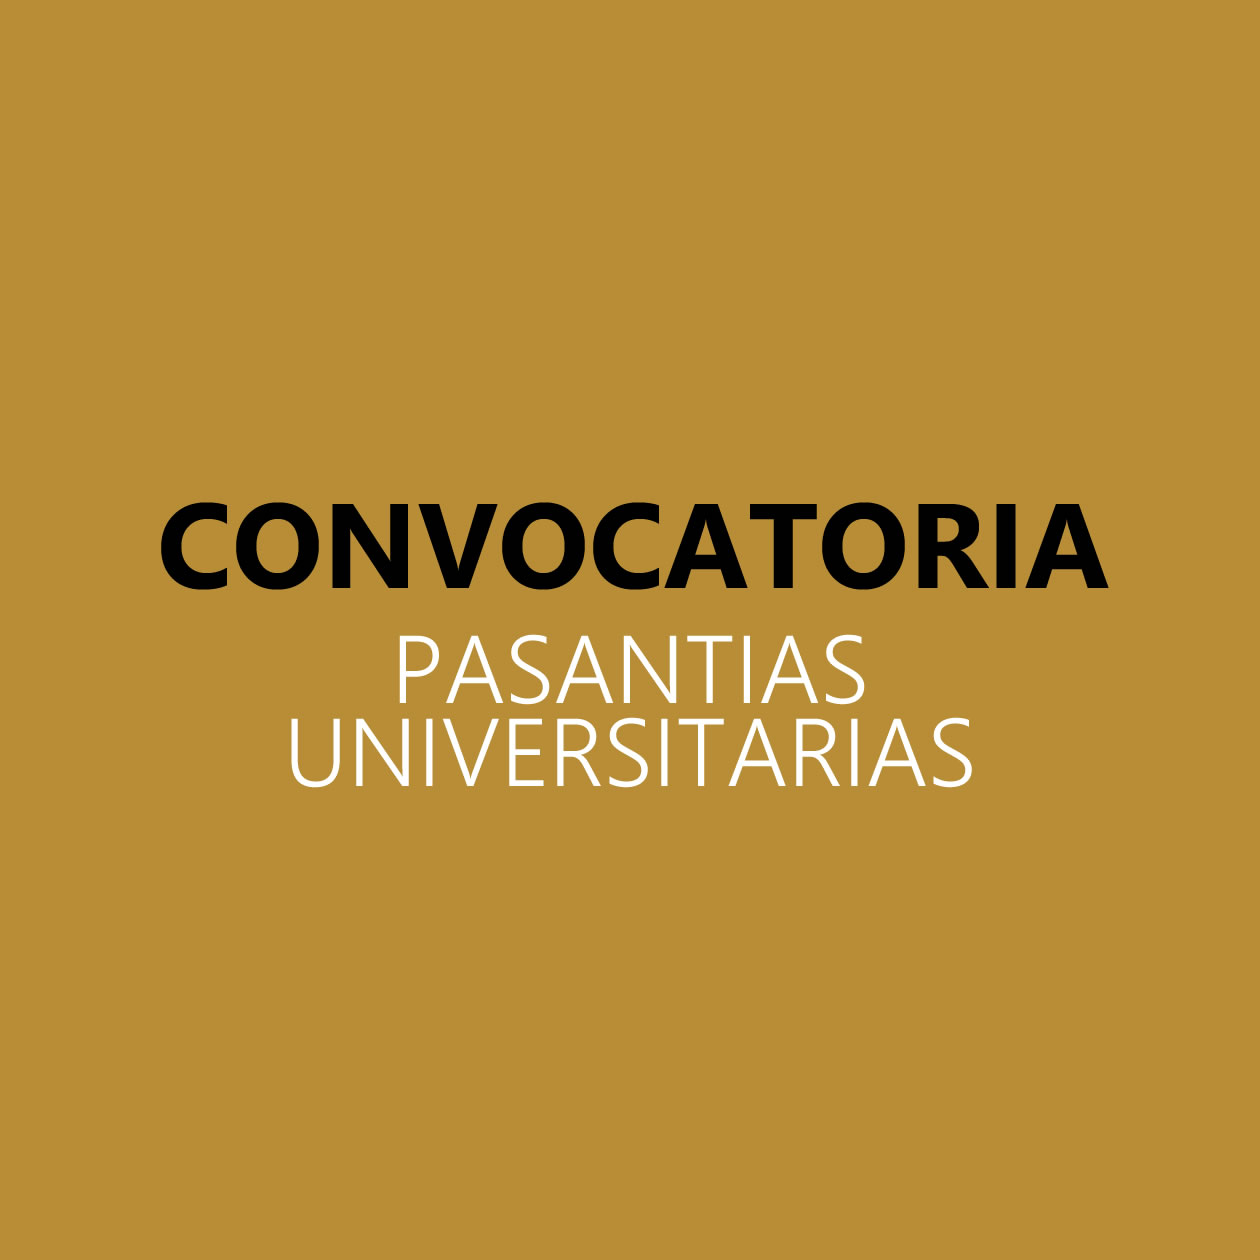 Pasantias_universitarias2018